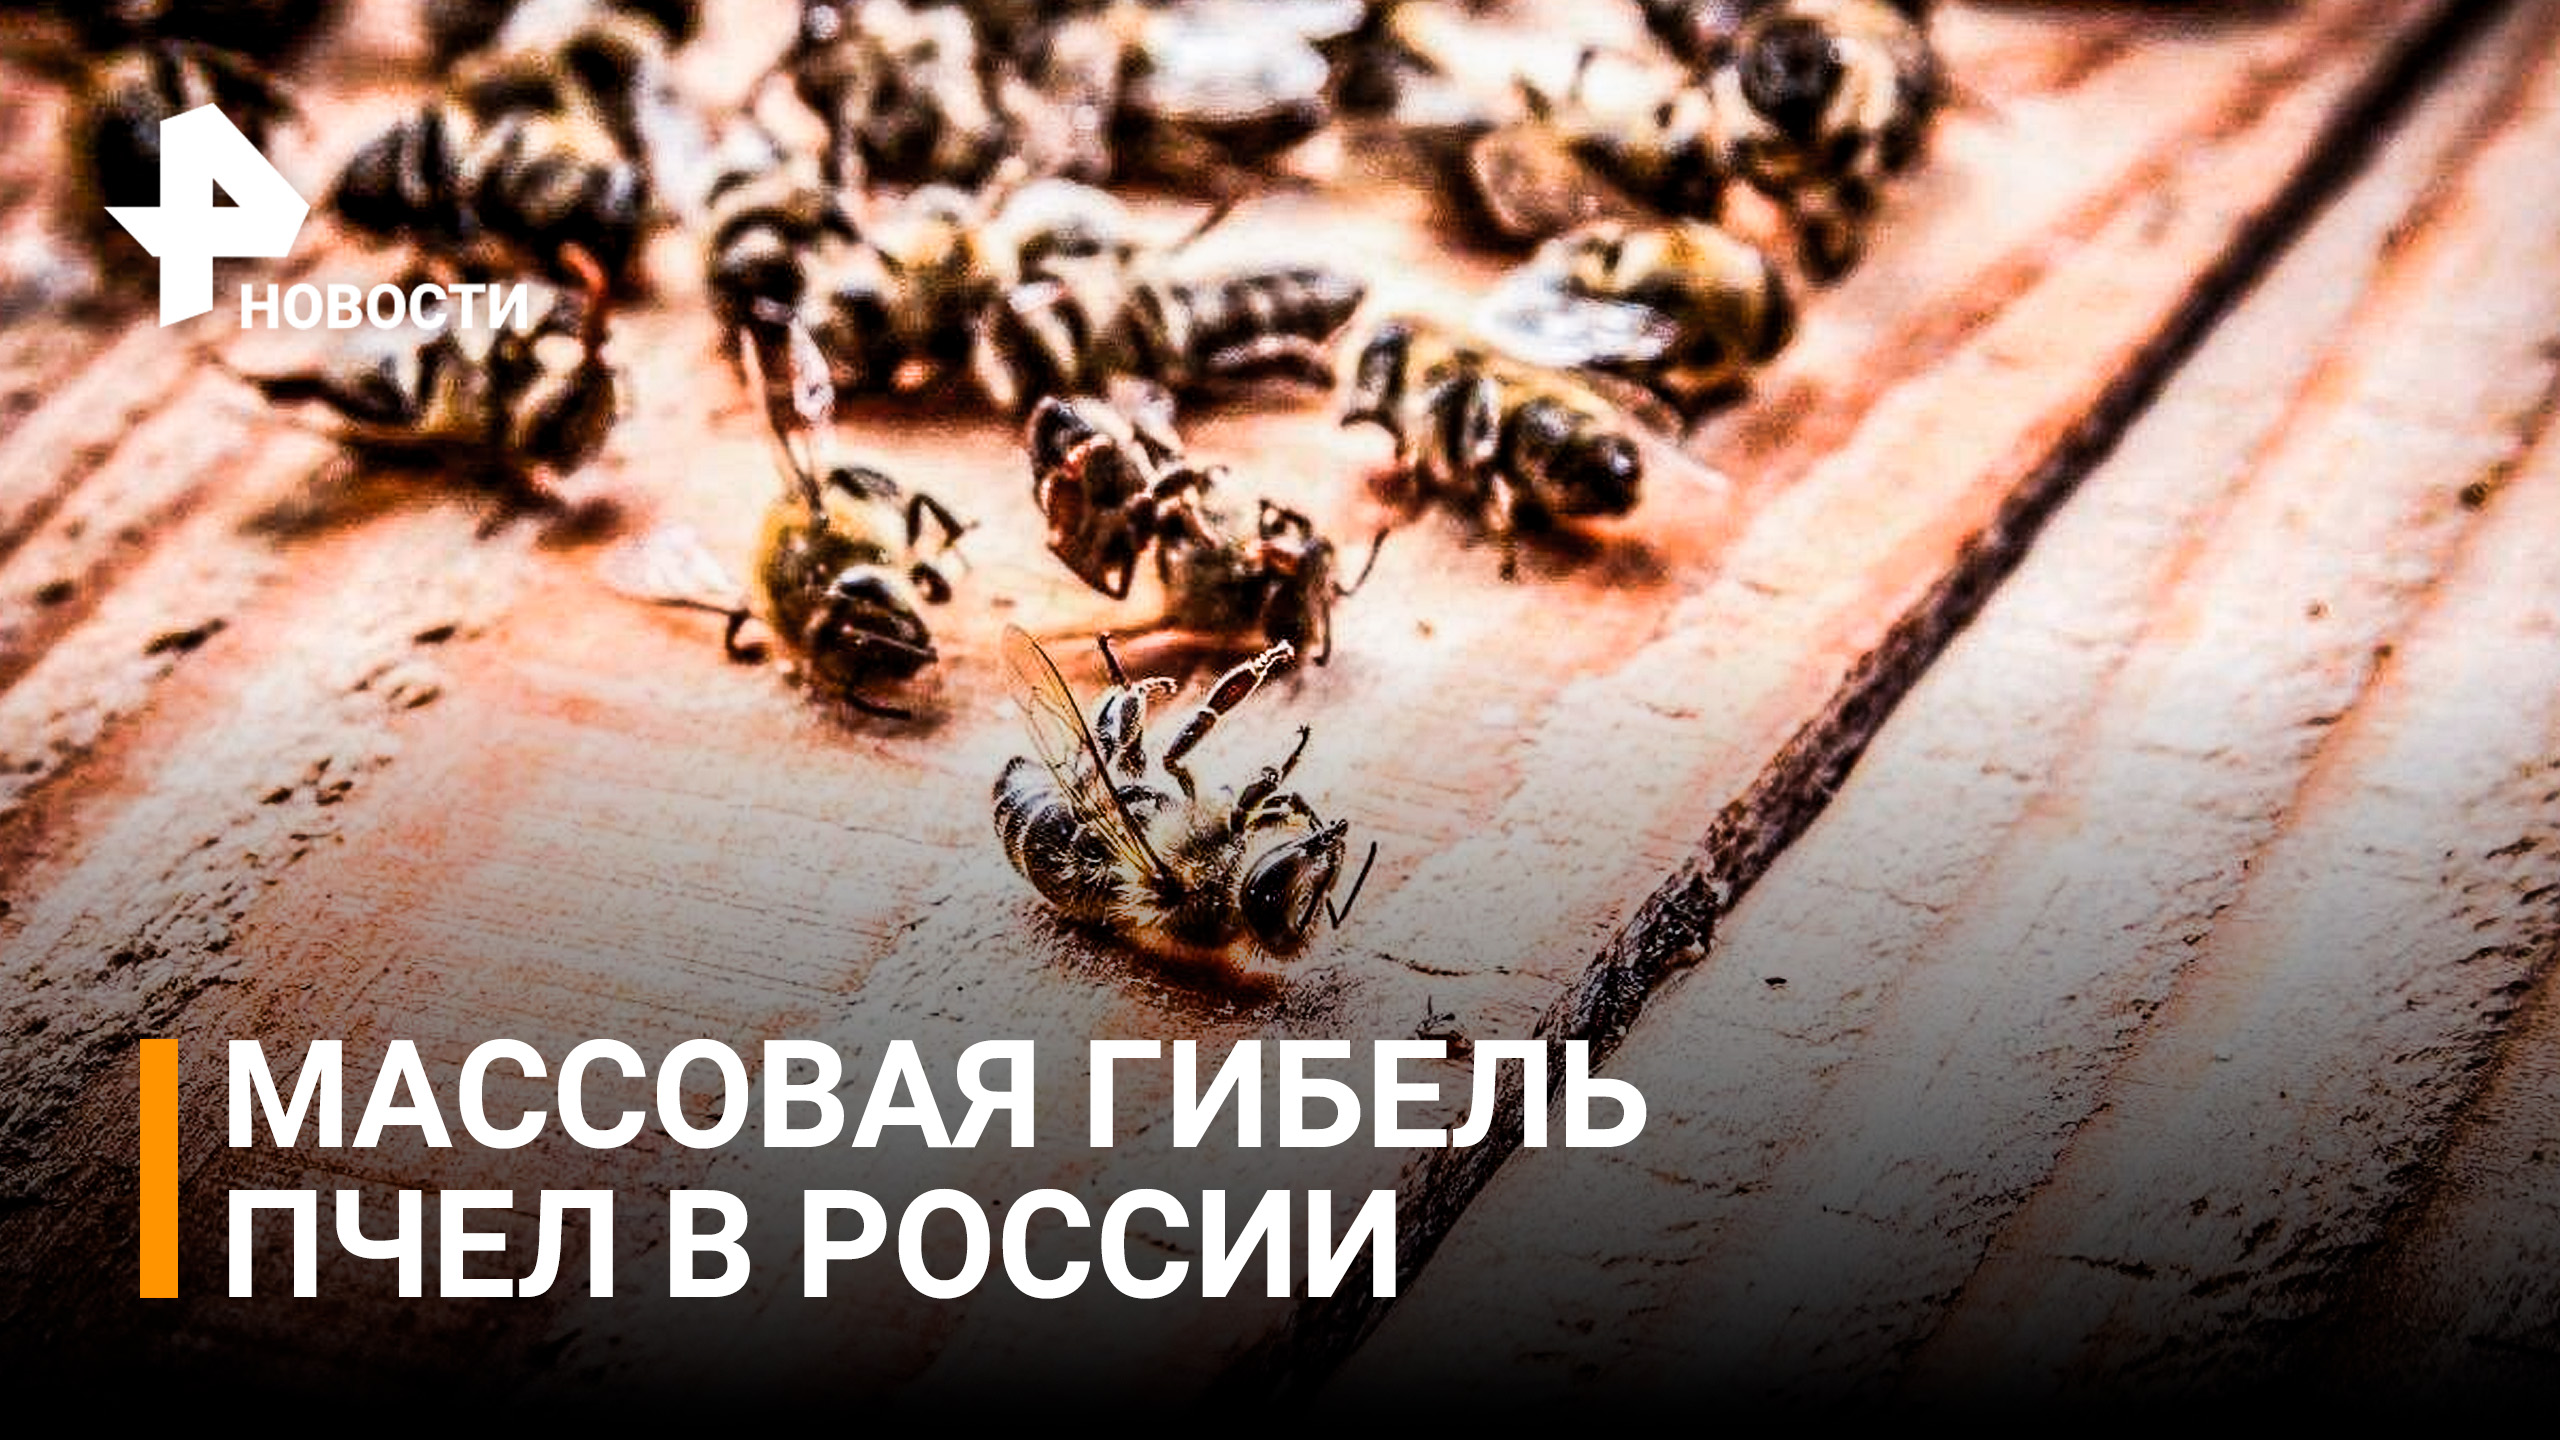 Массово гибнут. Массовая гибель пчел. Массовый мор пчел. В России массово гибнут пчелы. Пчелы черного цвета гибнут.